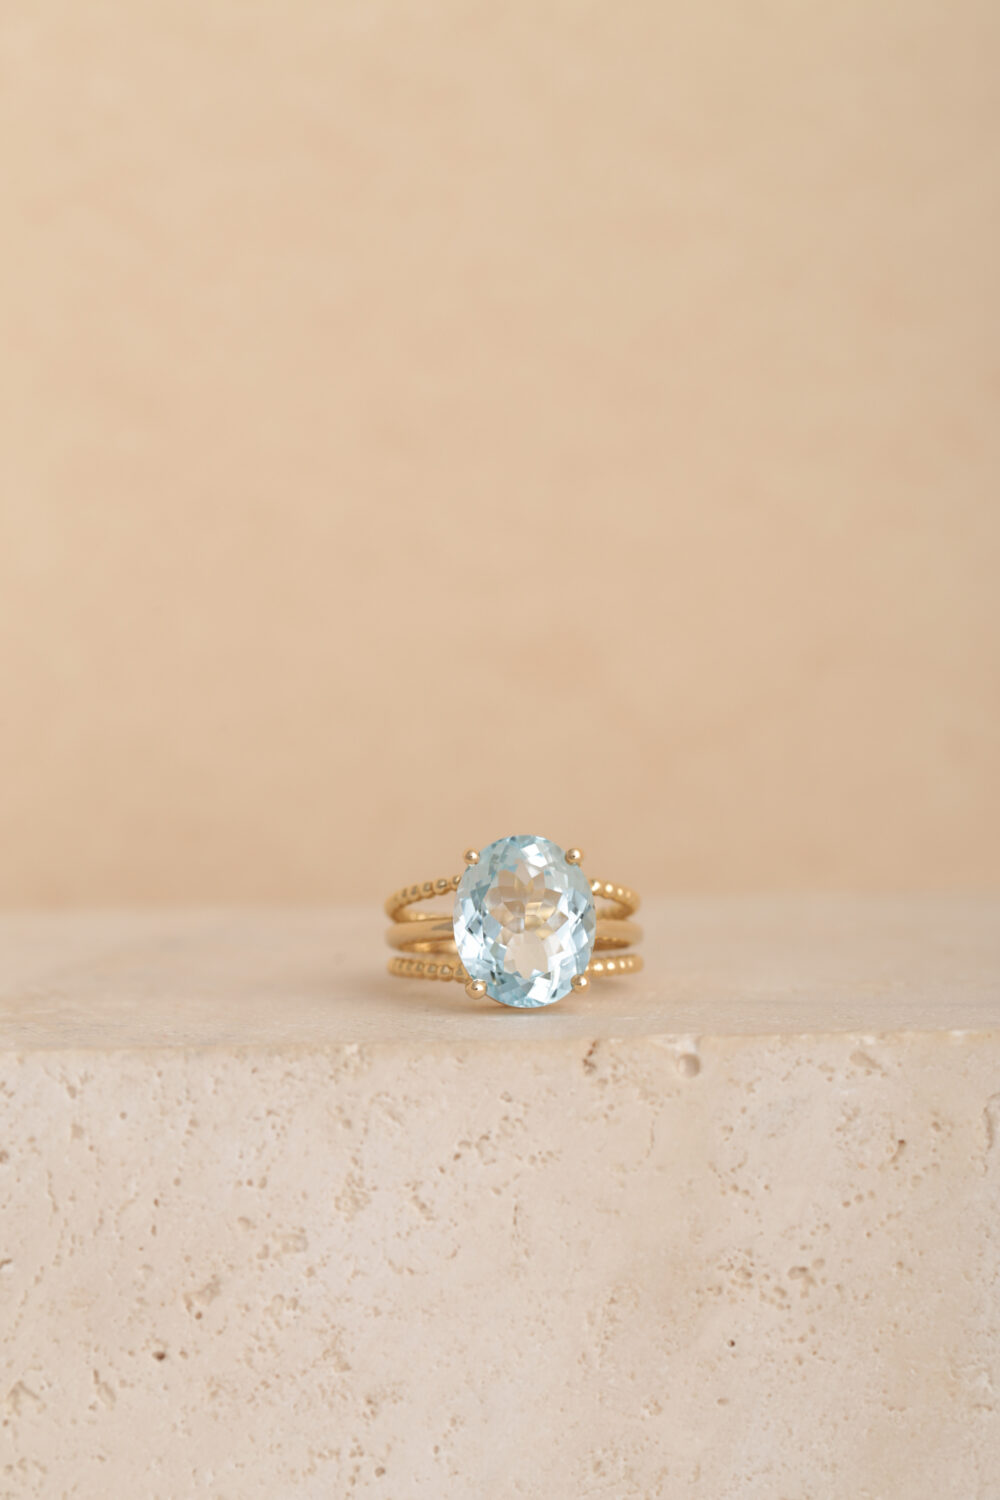 Ovale aquamarijn ring in 18-karaats geelgoud bezet met een aquamarijn edelsteen. Al onze sieraden zijn handgemaakt door sieradenontwerpster Pascale Masselis.